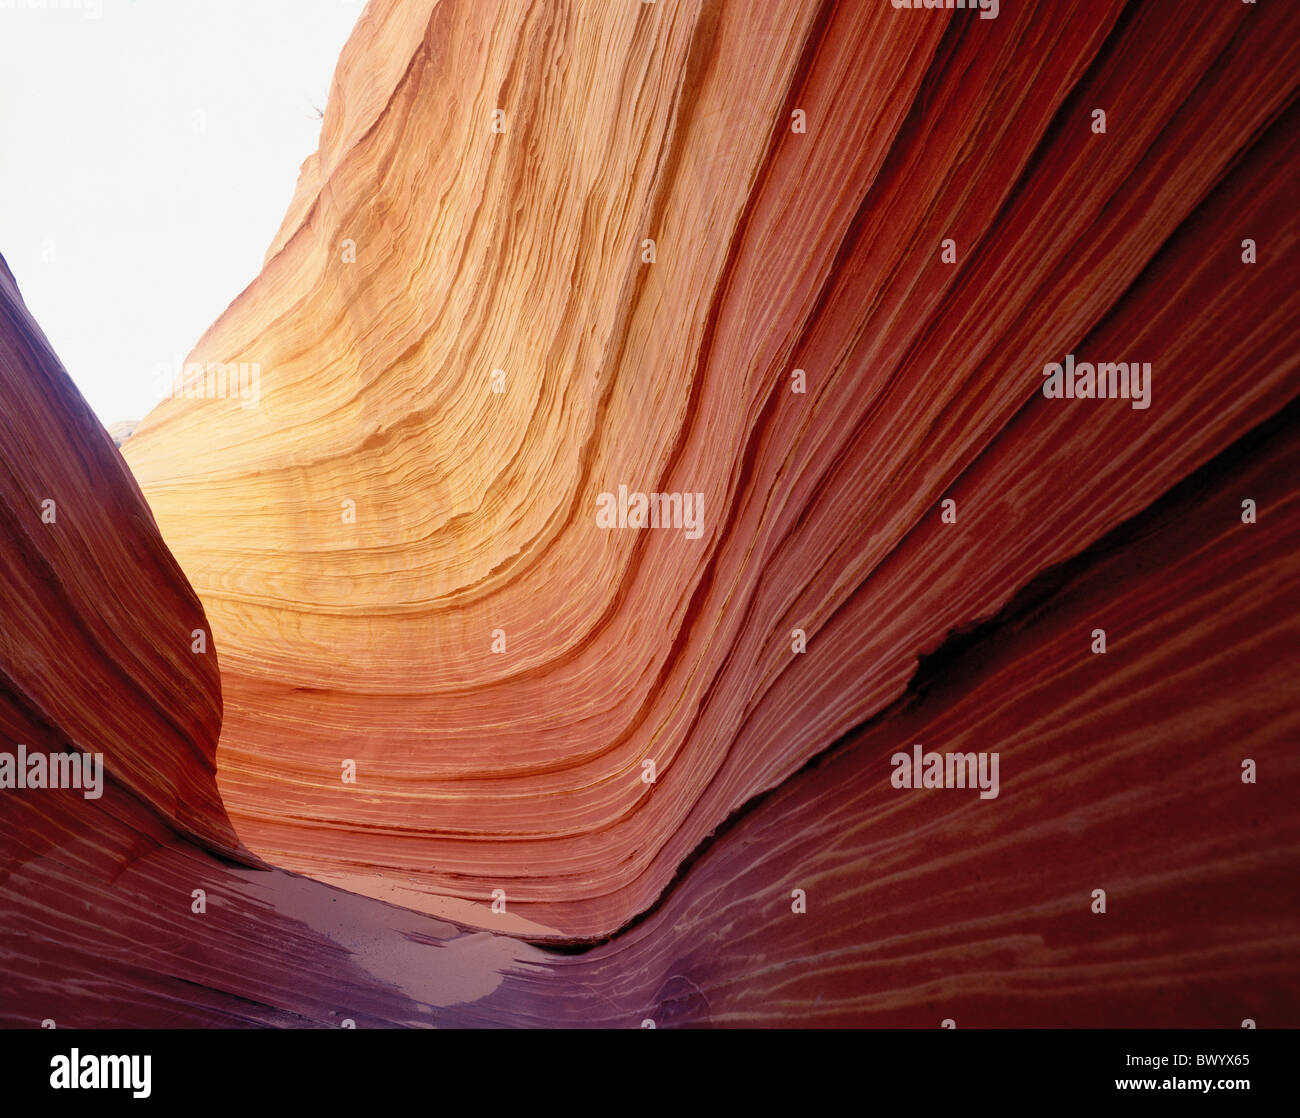 Forme de l'érosion de la structure de grès pariah canyon USA Amérique du Nord Utah Vermilion Cliffs vague Banque D'Images